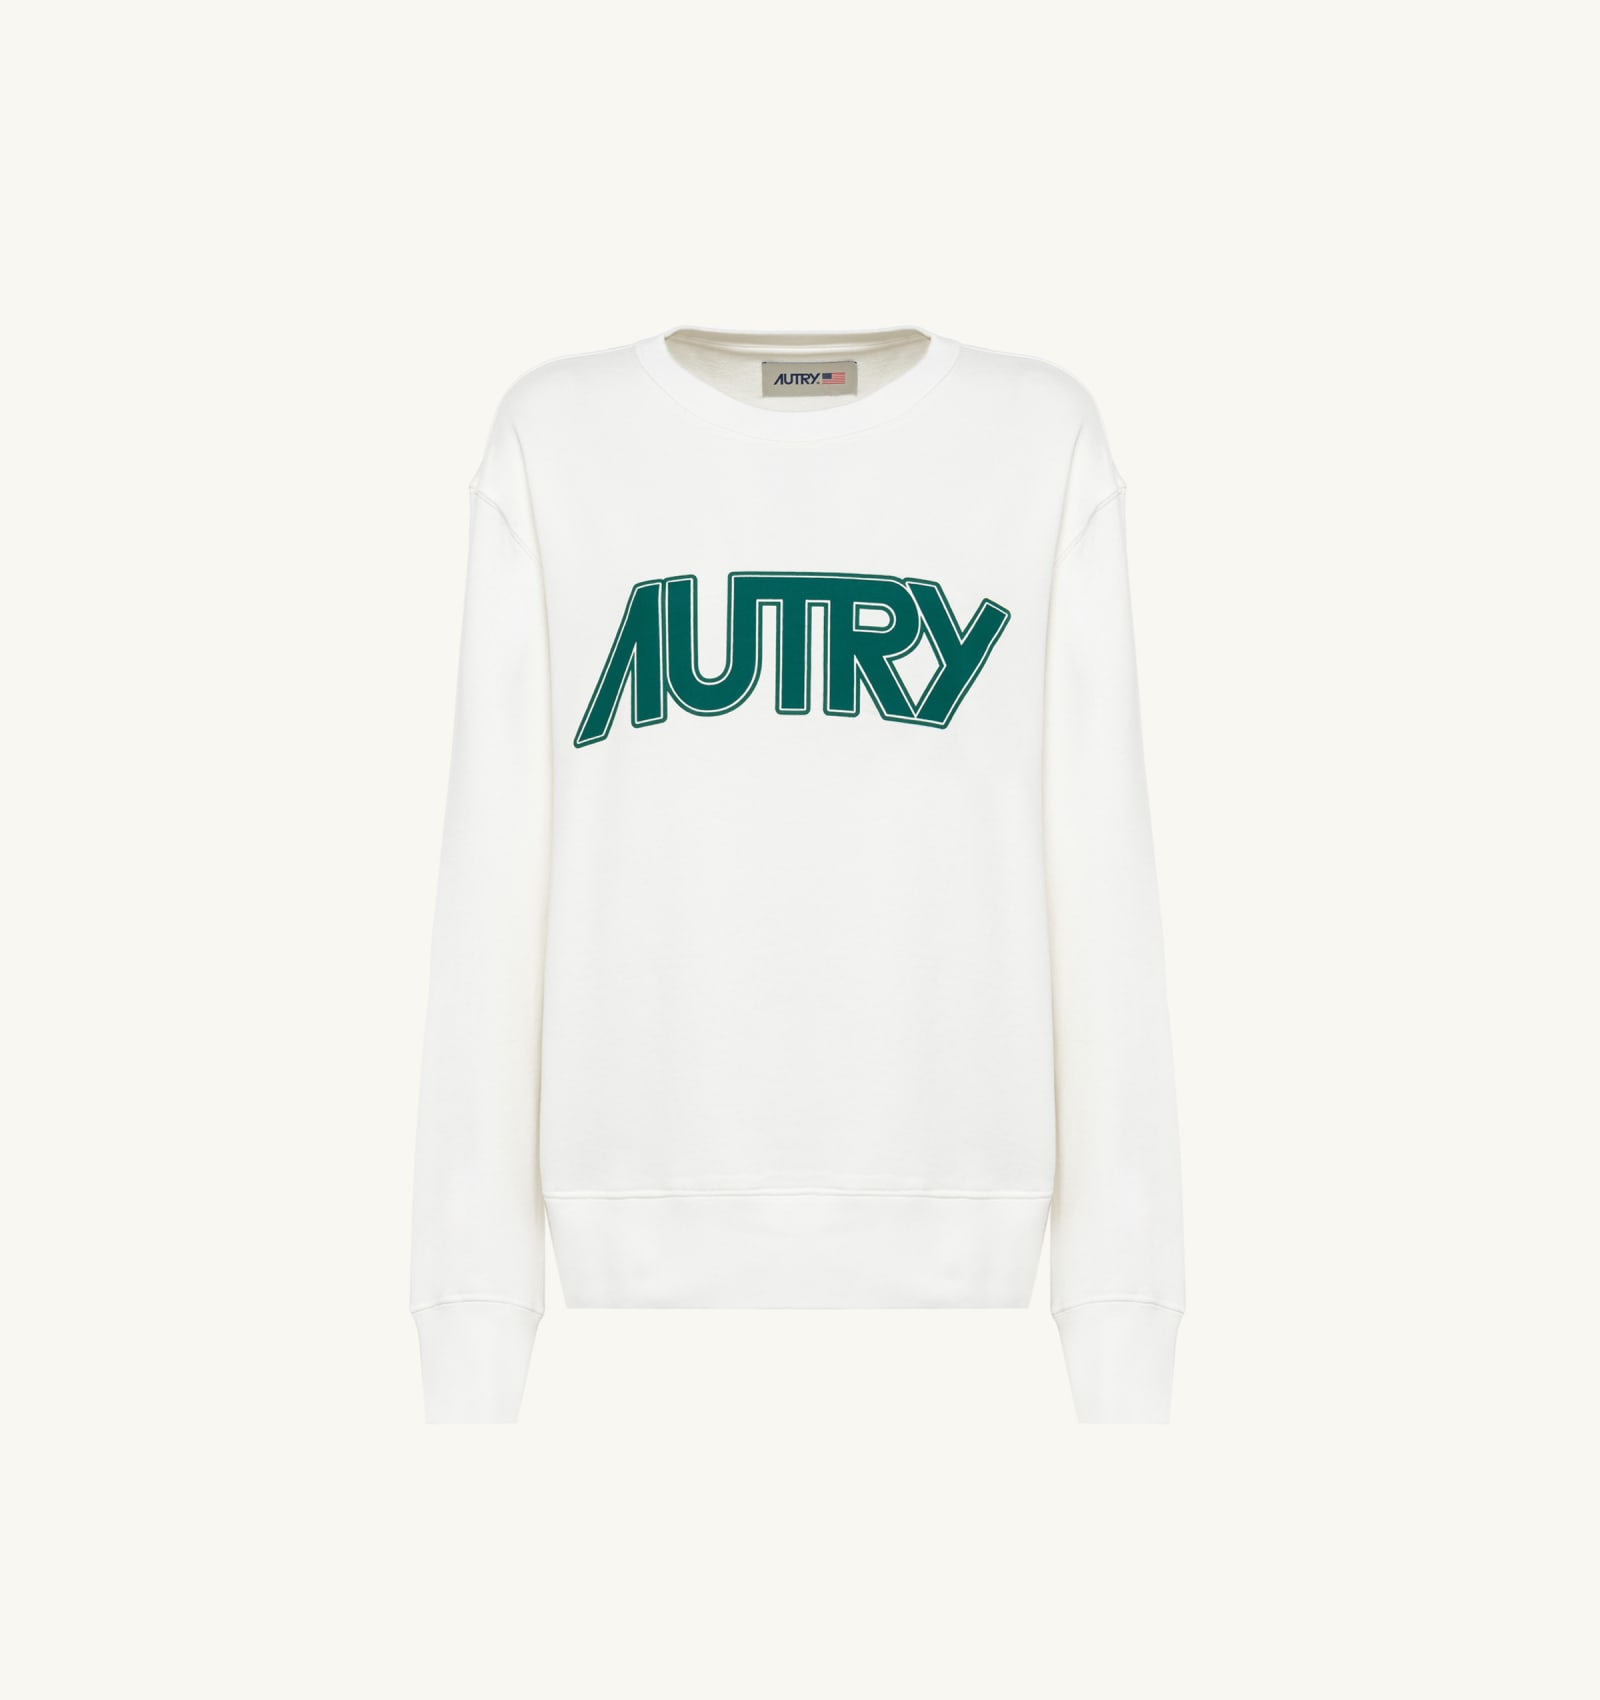 Shop Autry Sweatshirt In White